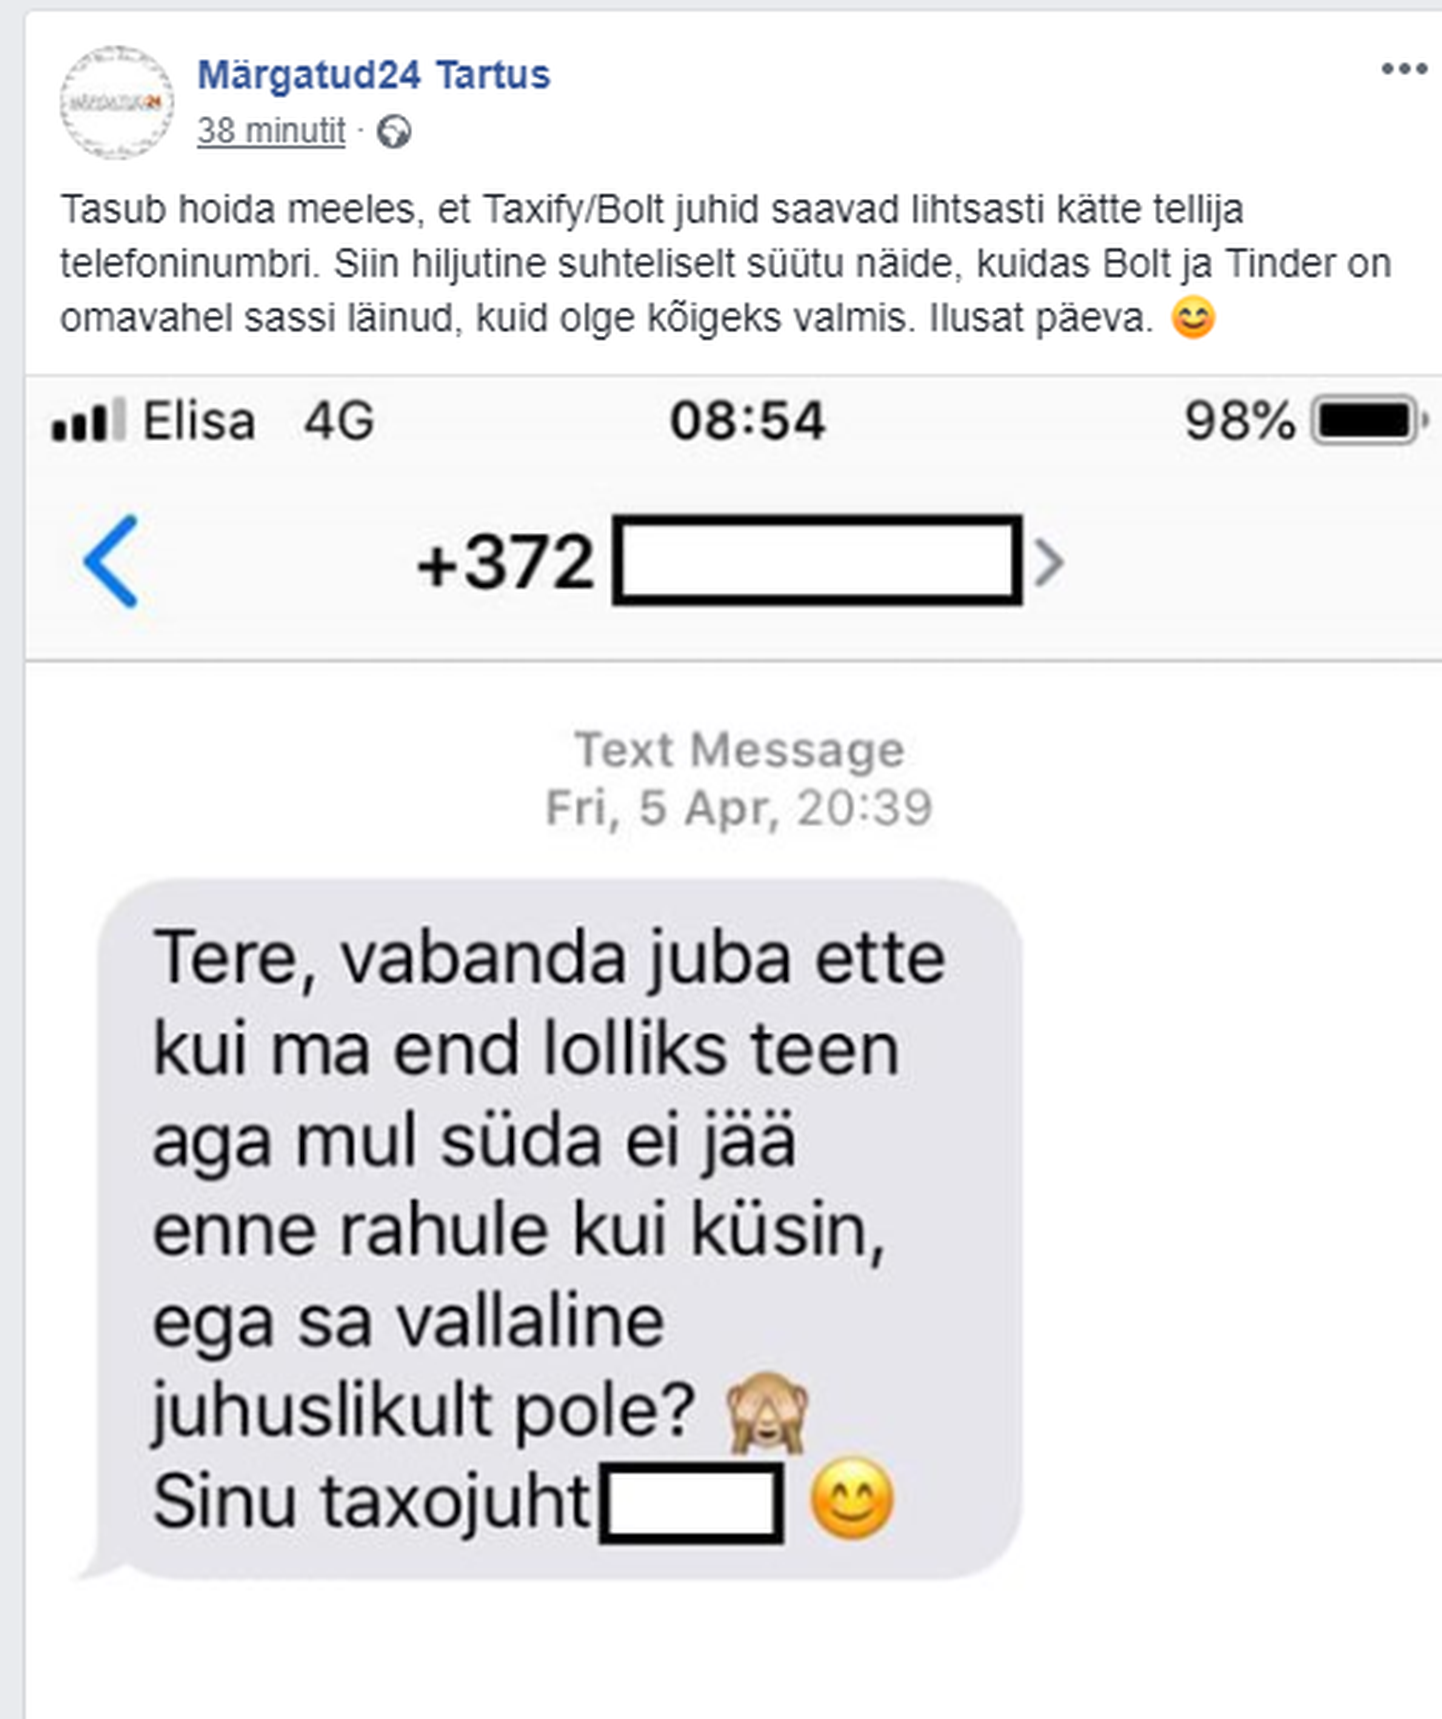 Bolti kasutanud klient saatis Facebooki grupile Märgatud24 Tartus foto, milles taksojuht uuris tema suhtestaatuse kohta.